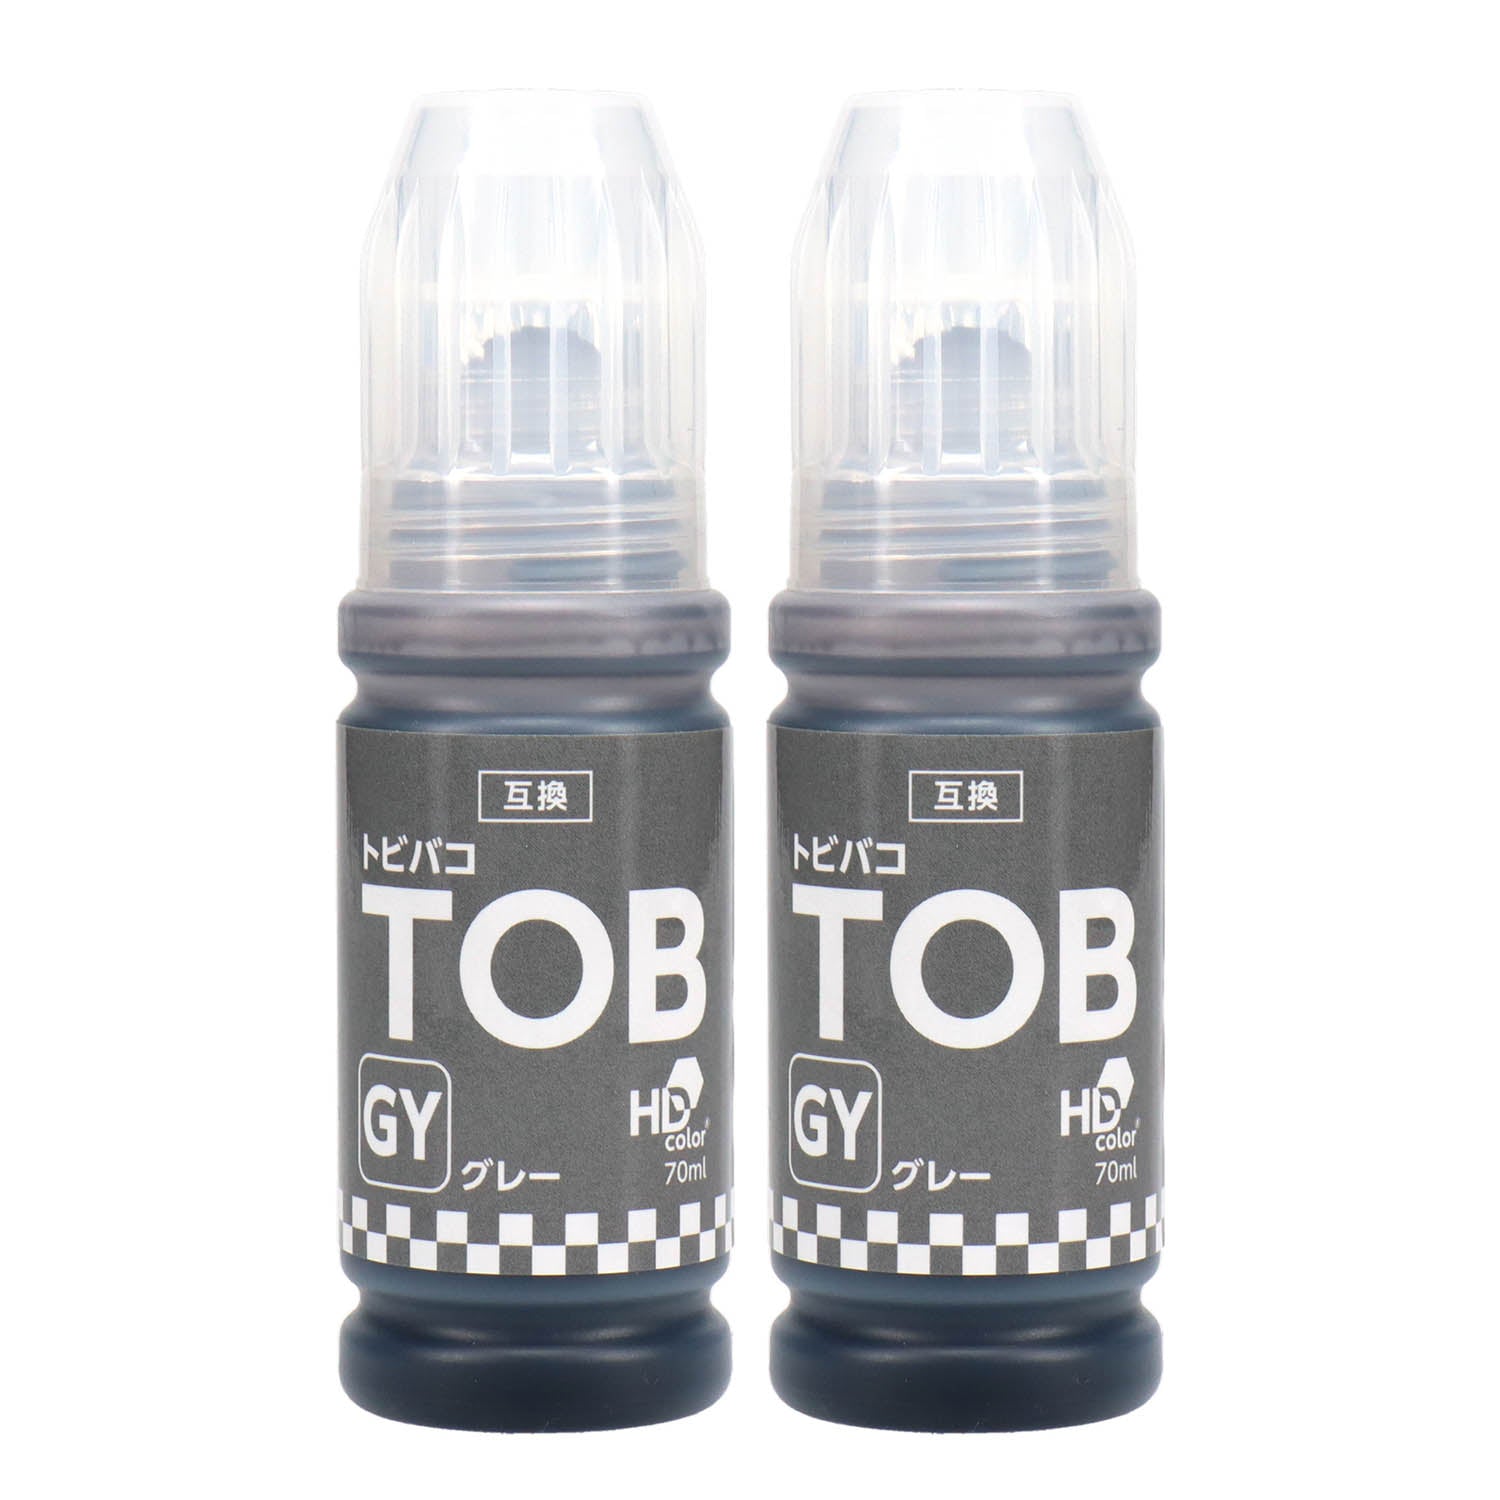 エプソン用 TOB-GY (トビバコ) 互換インクボトル グレー